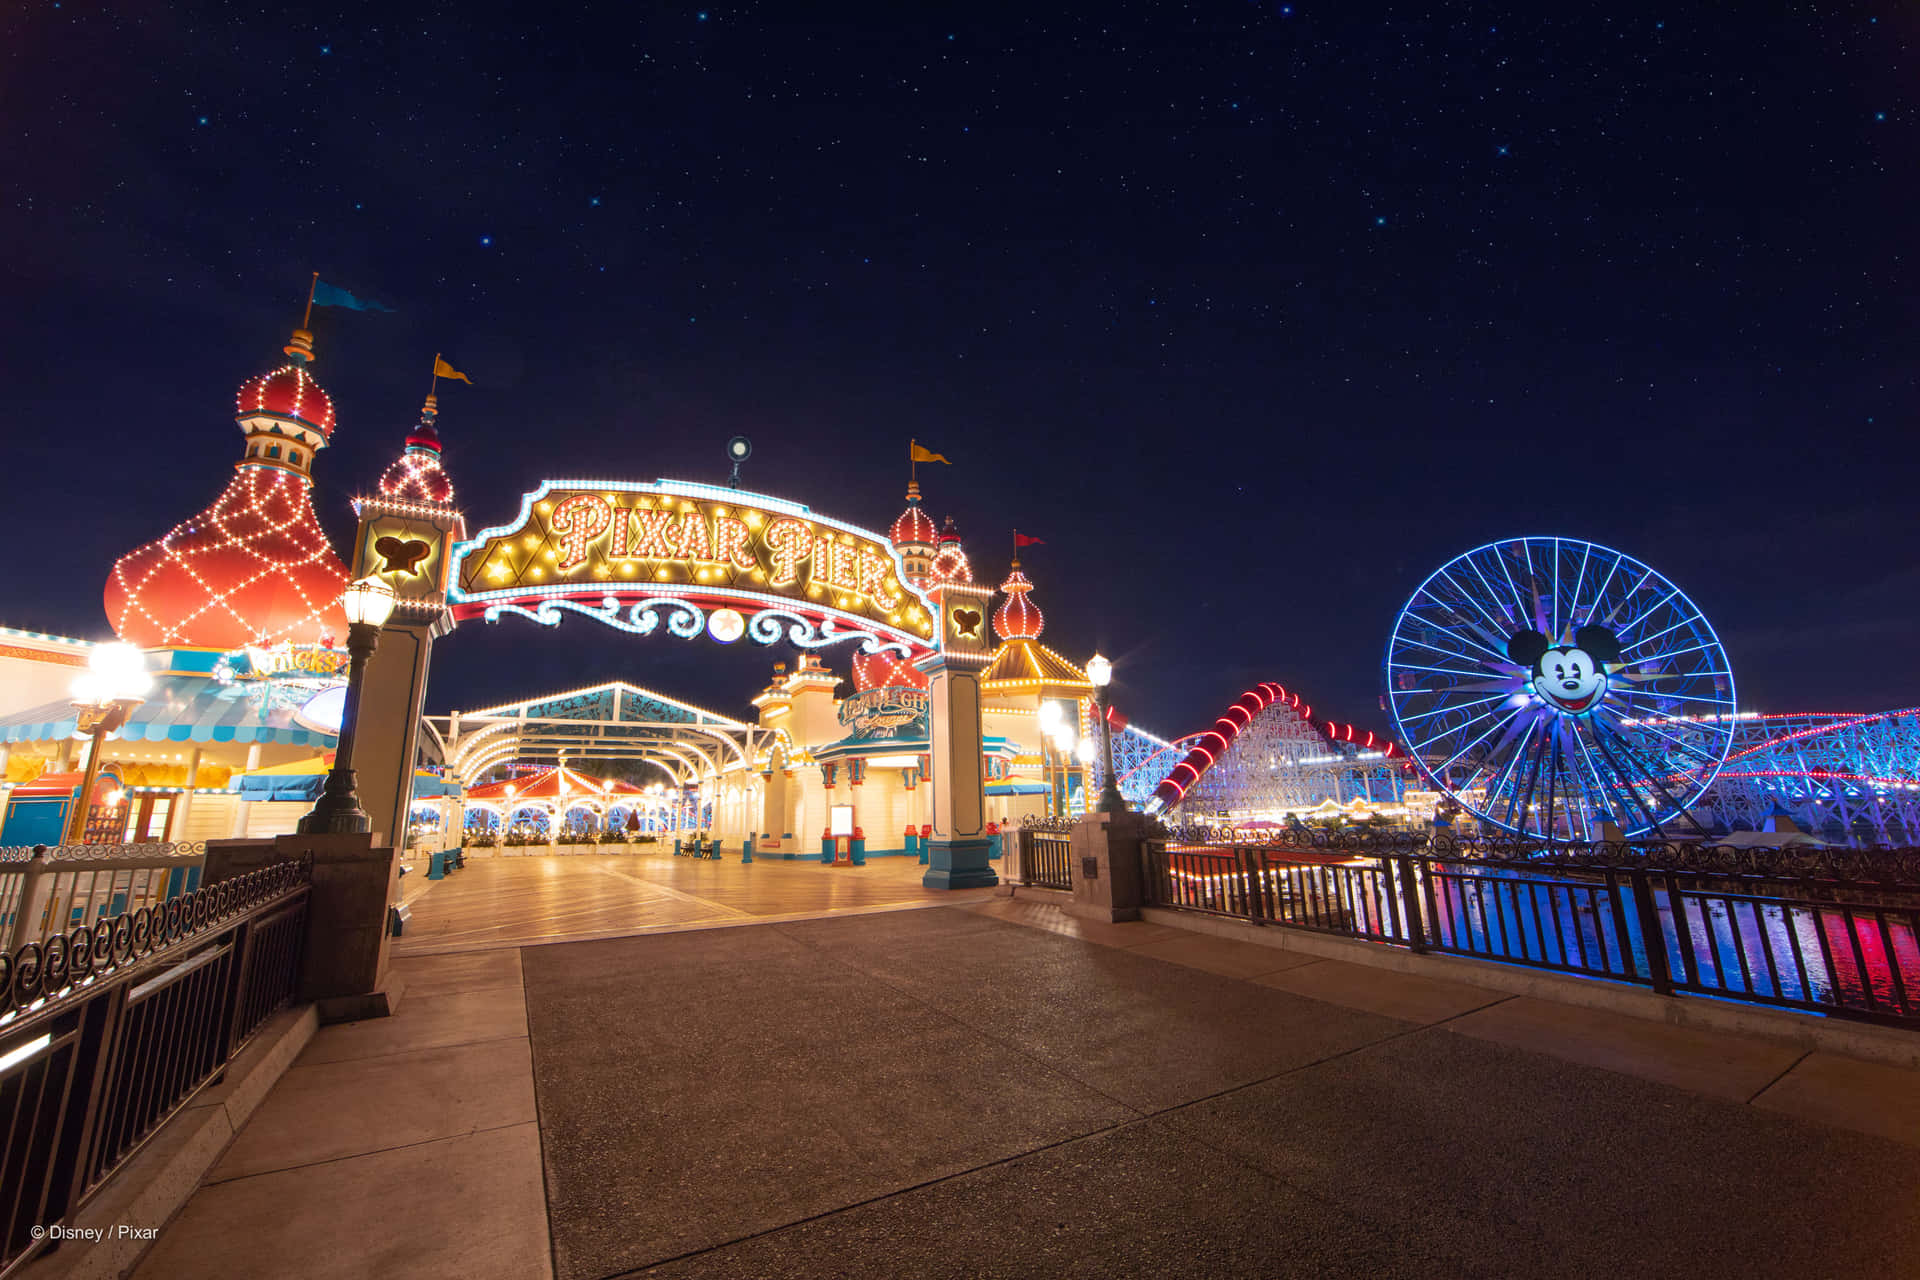 Magic awaits at Disneyland